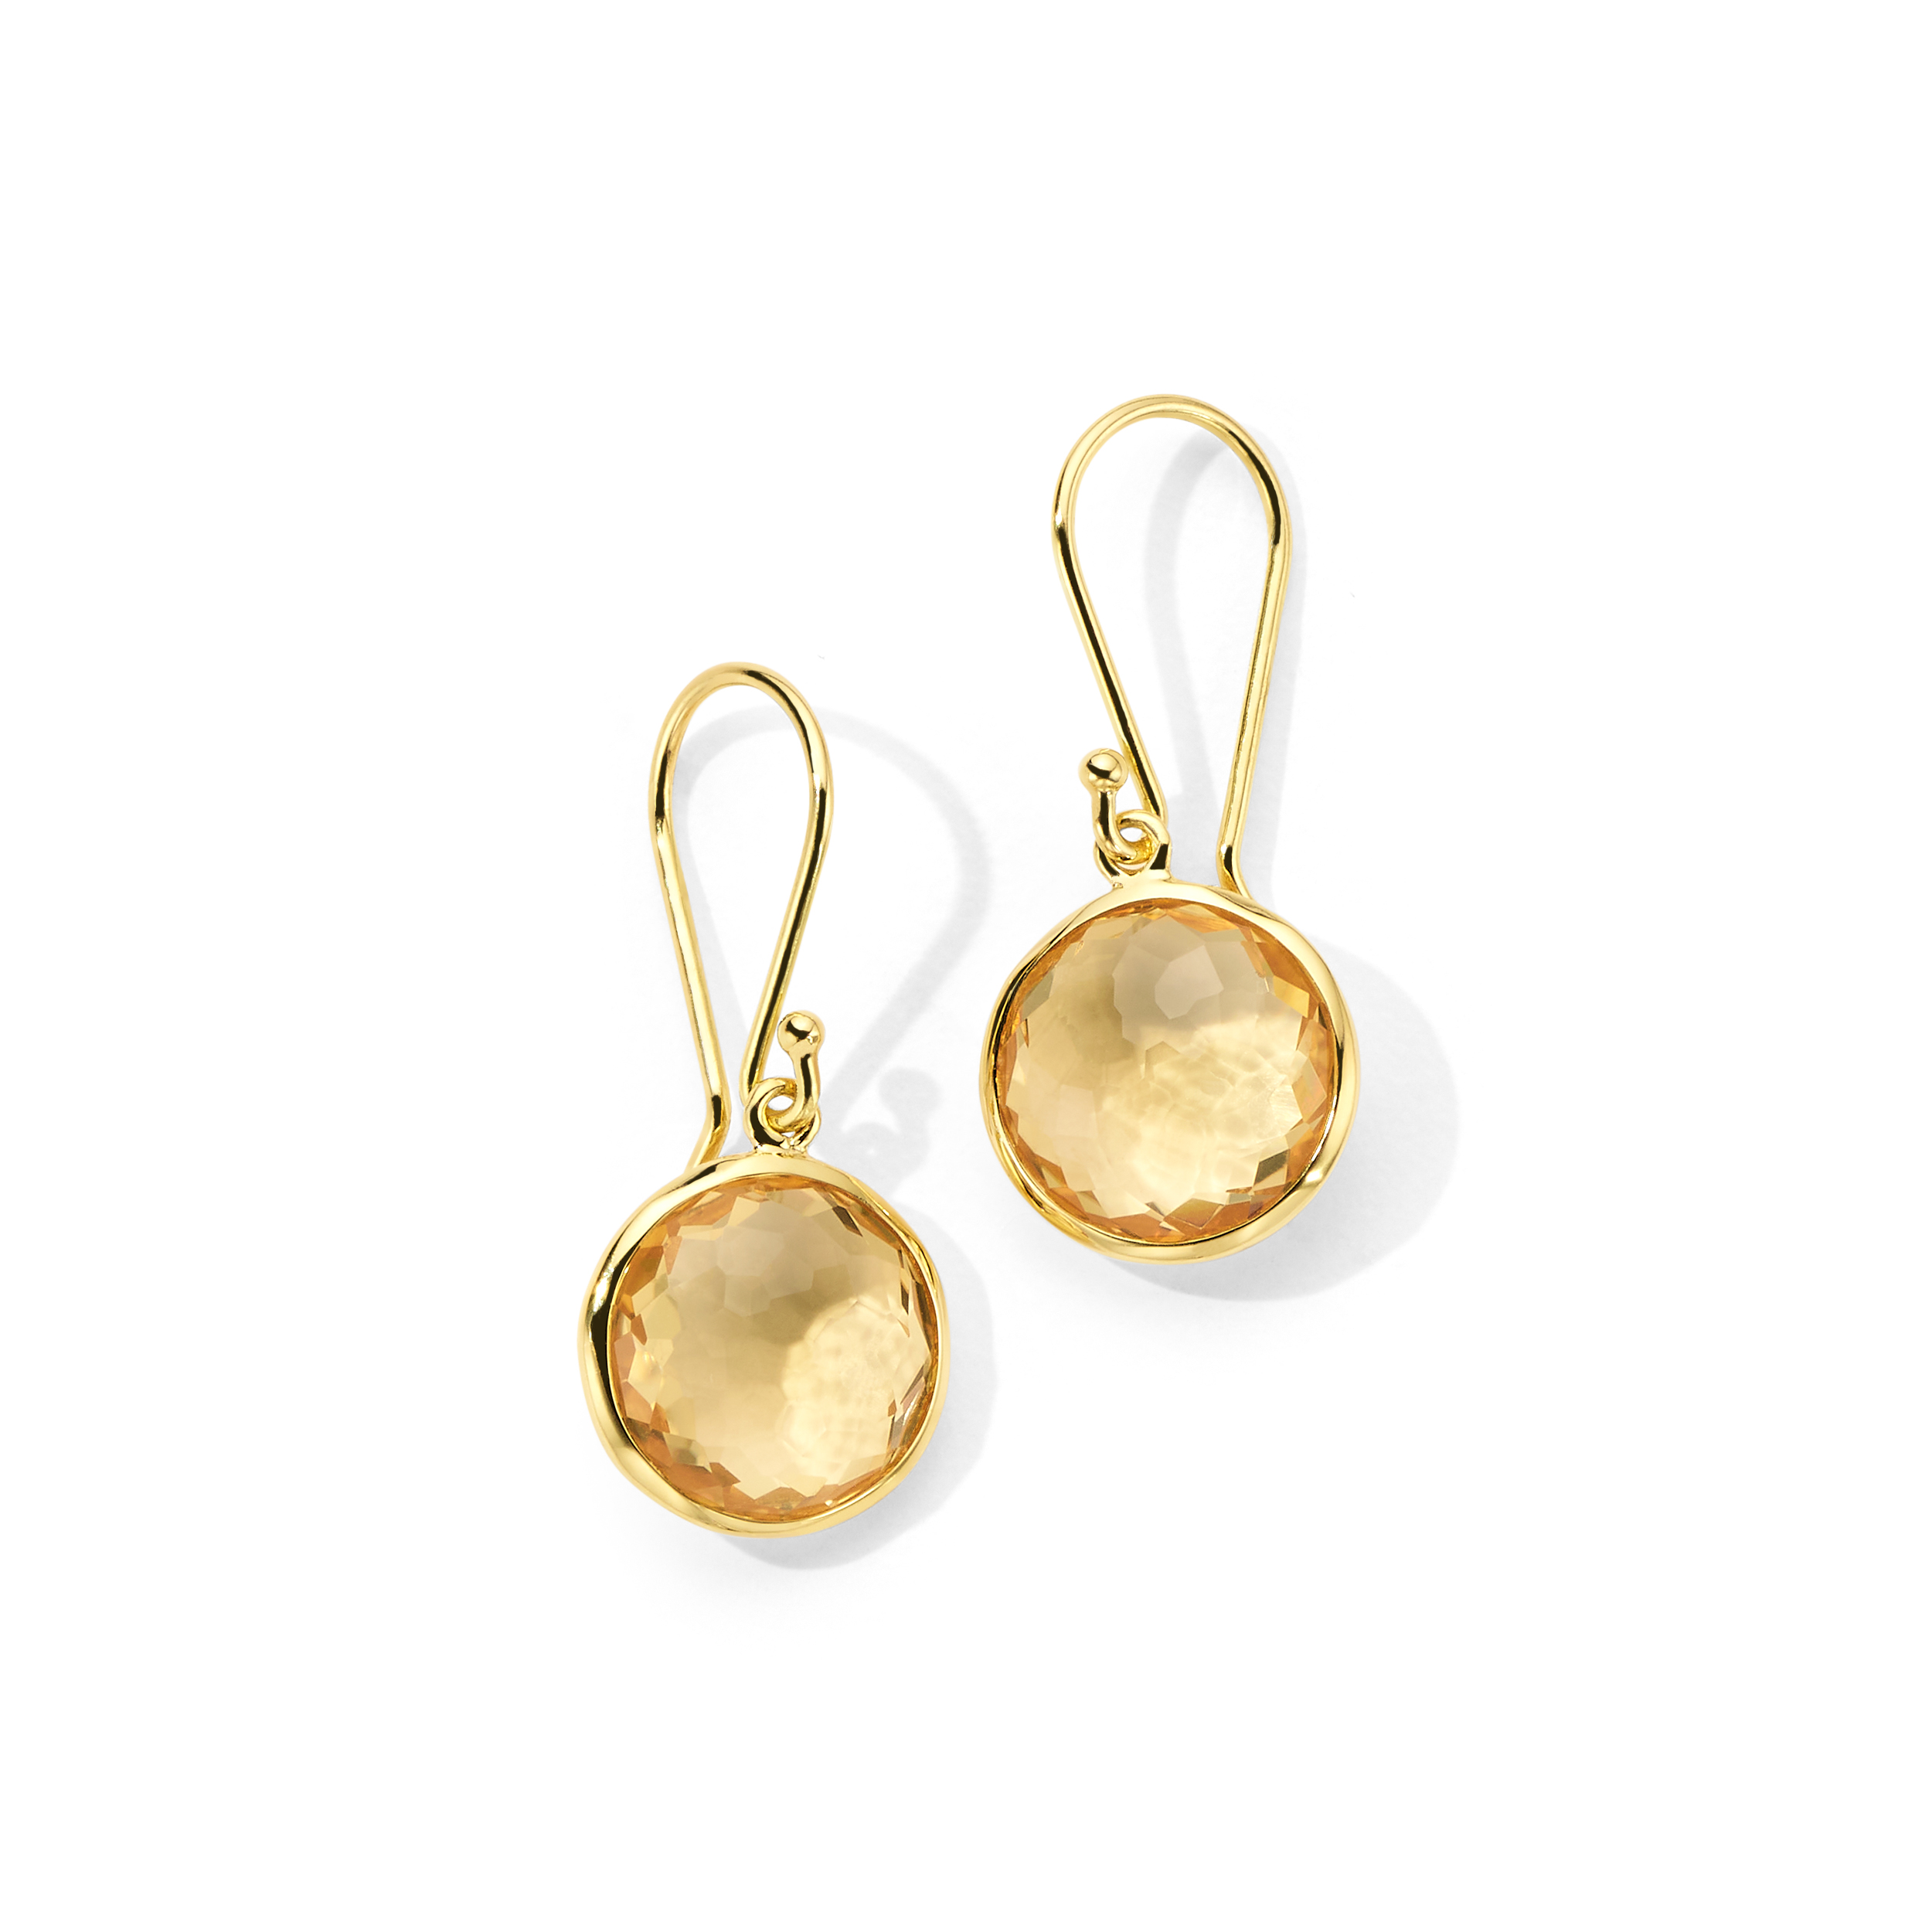 IPPOLITA Lollipop® Small Single Drop Earrings in 18K Gold